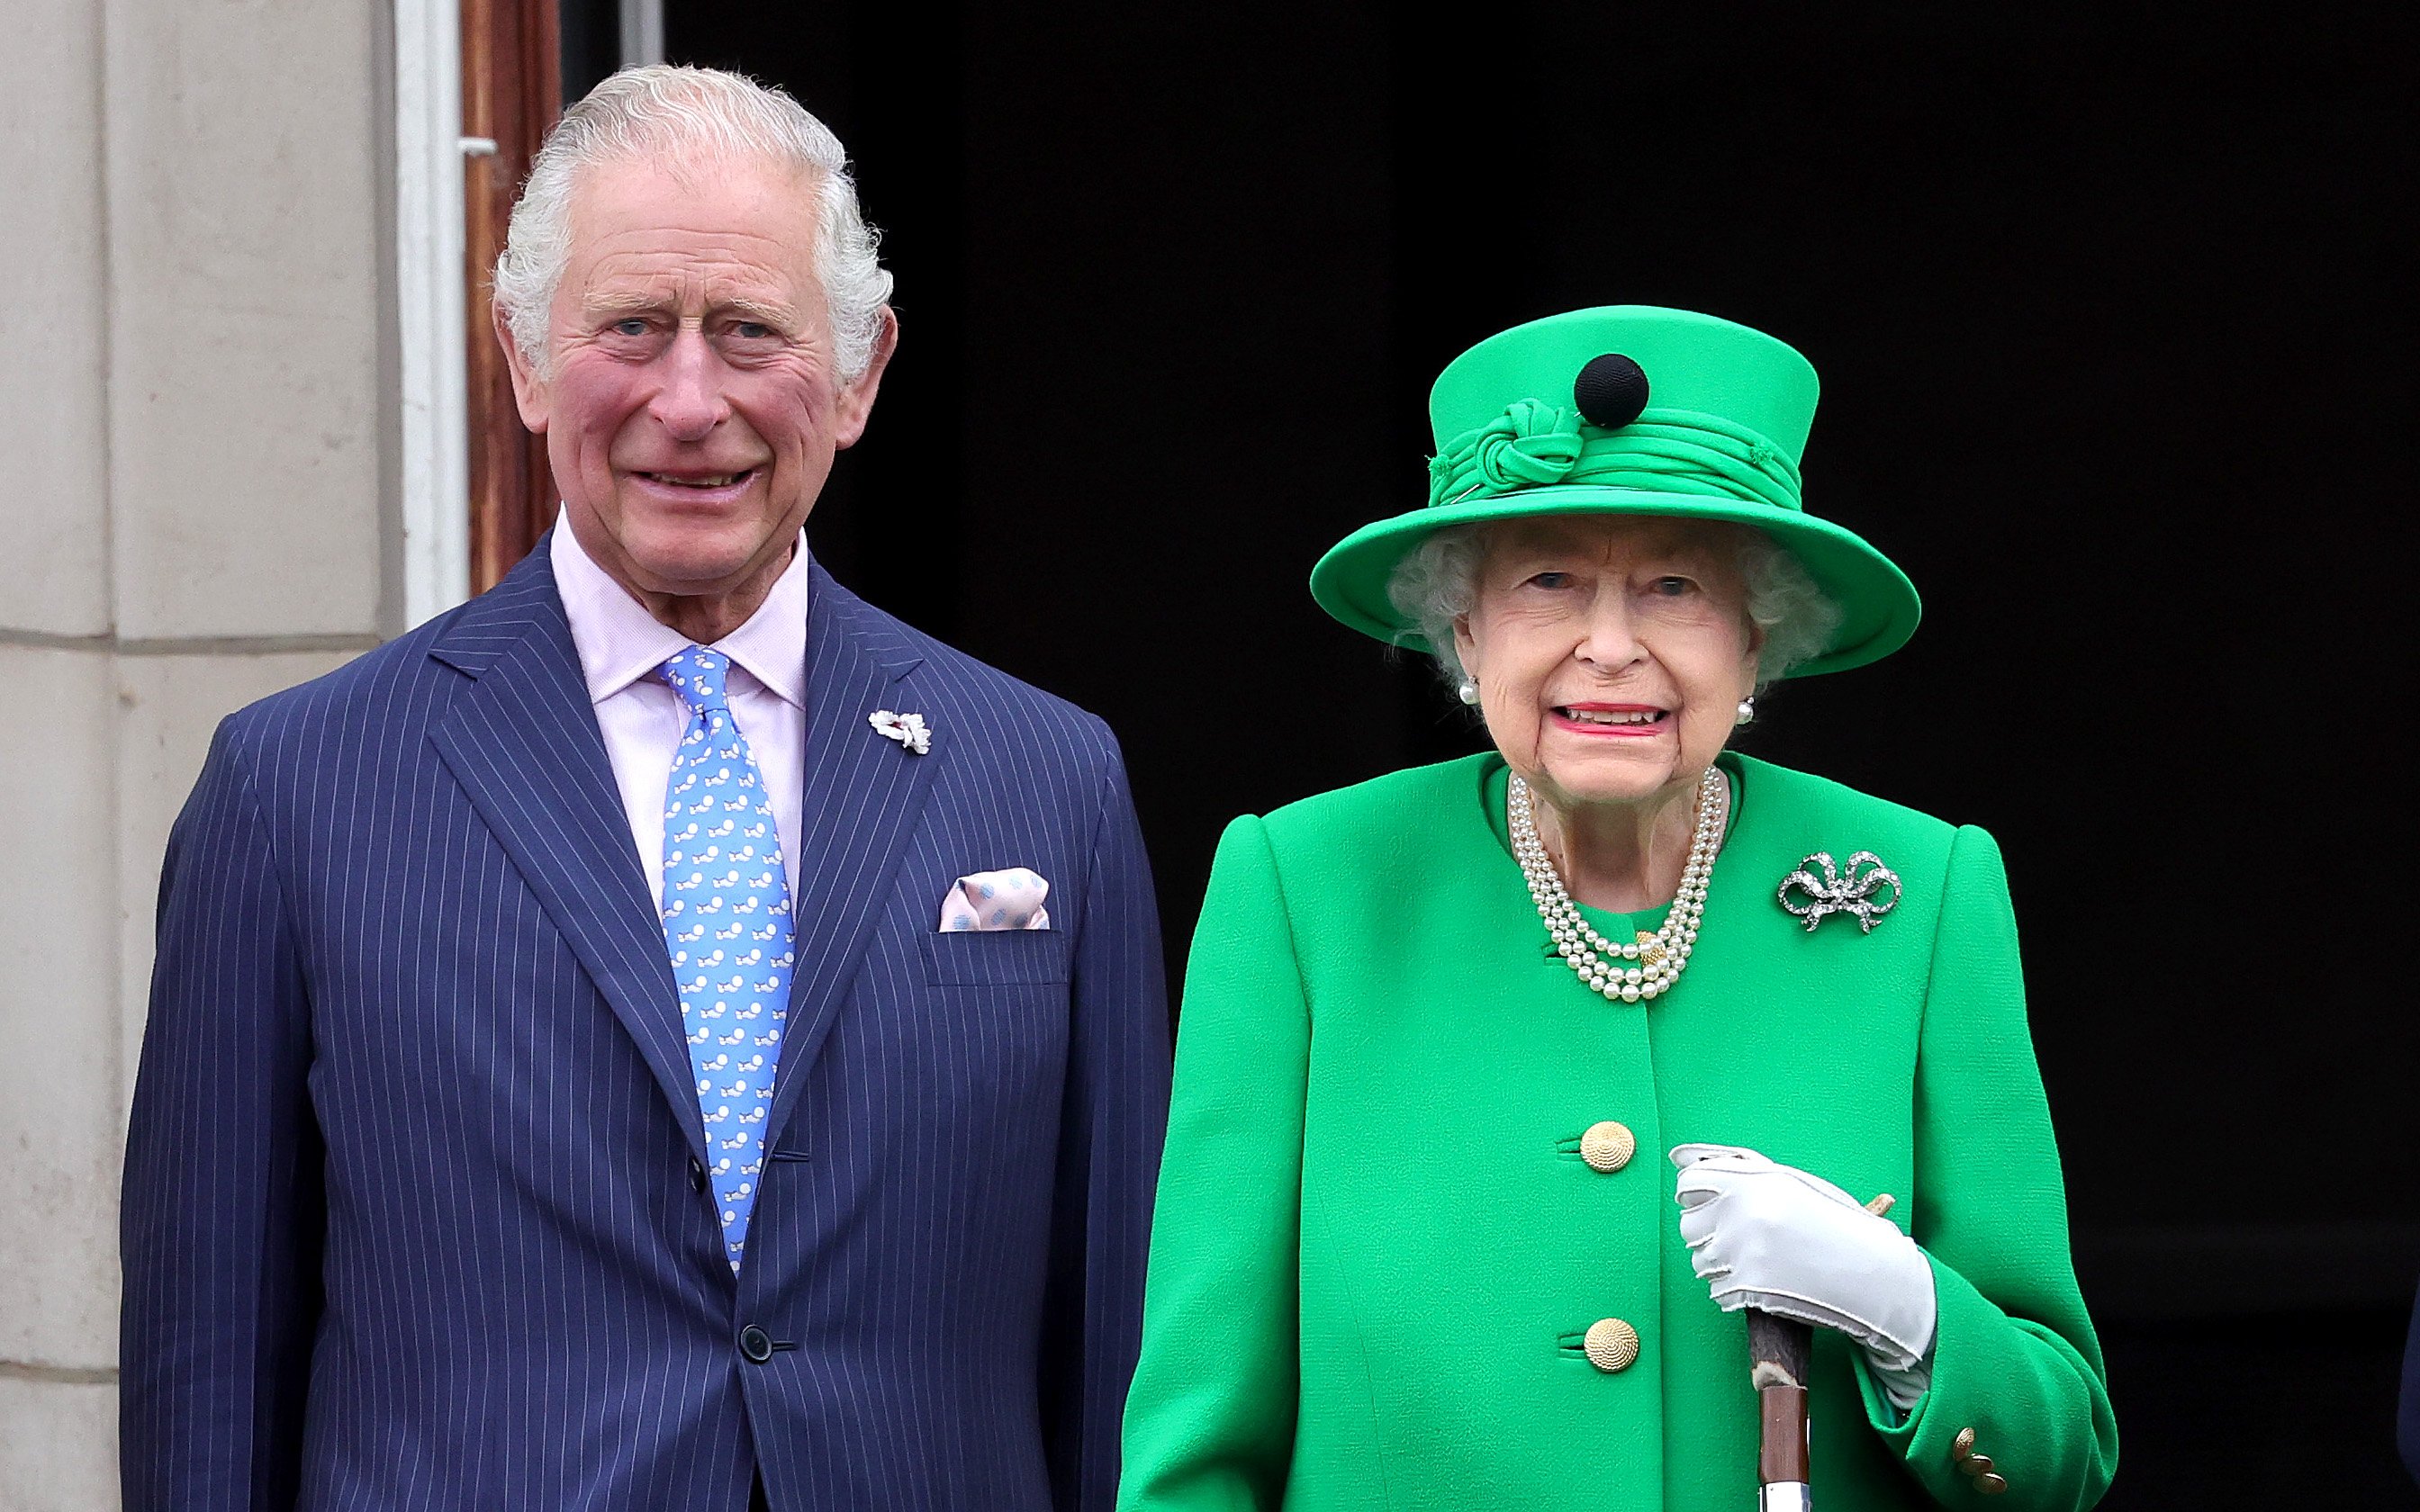 La reina Elizabeth II y el príncipe Charles, príncipe de Gales, en el balcón del Palacio de Buckingham el 5 de junio de 2022. | Foto: Getty Images